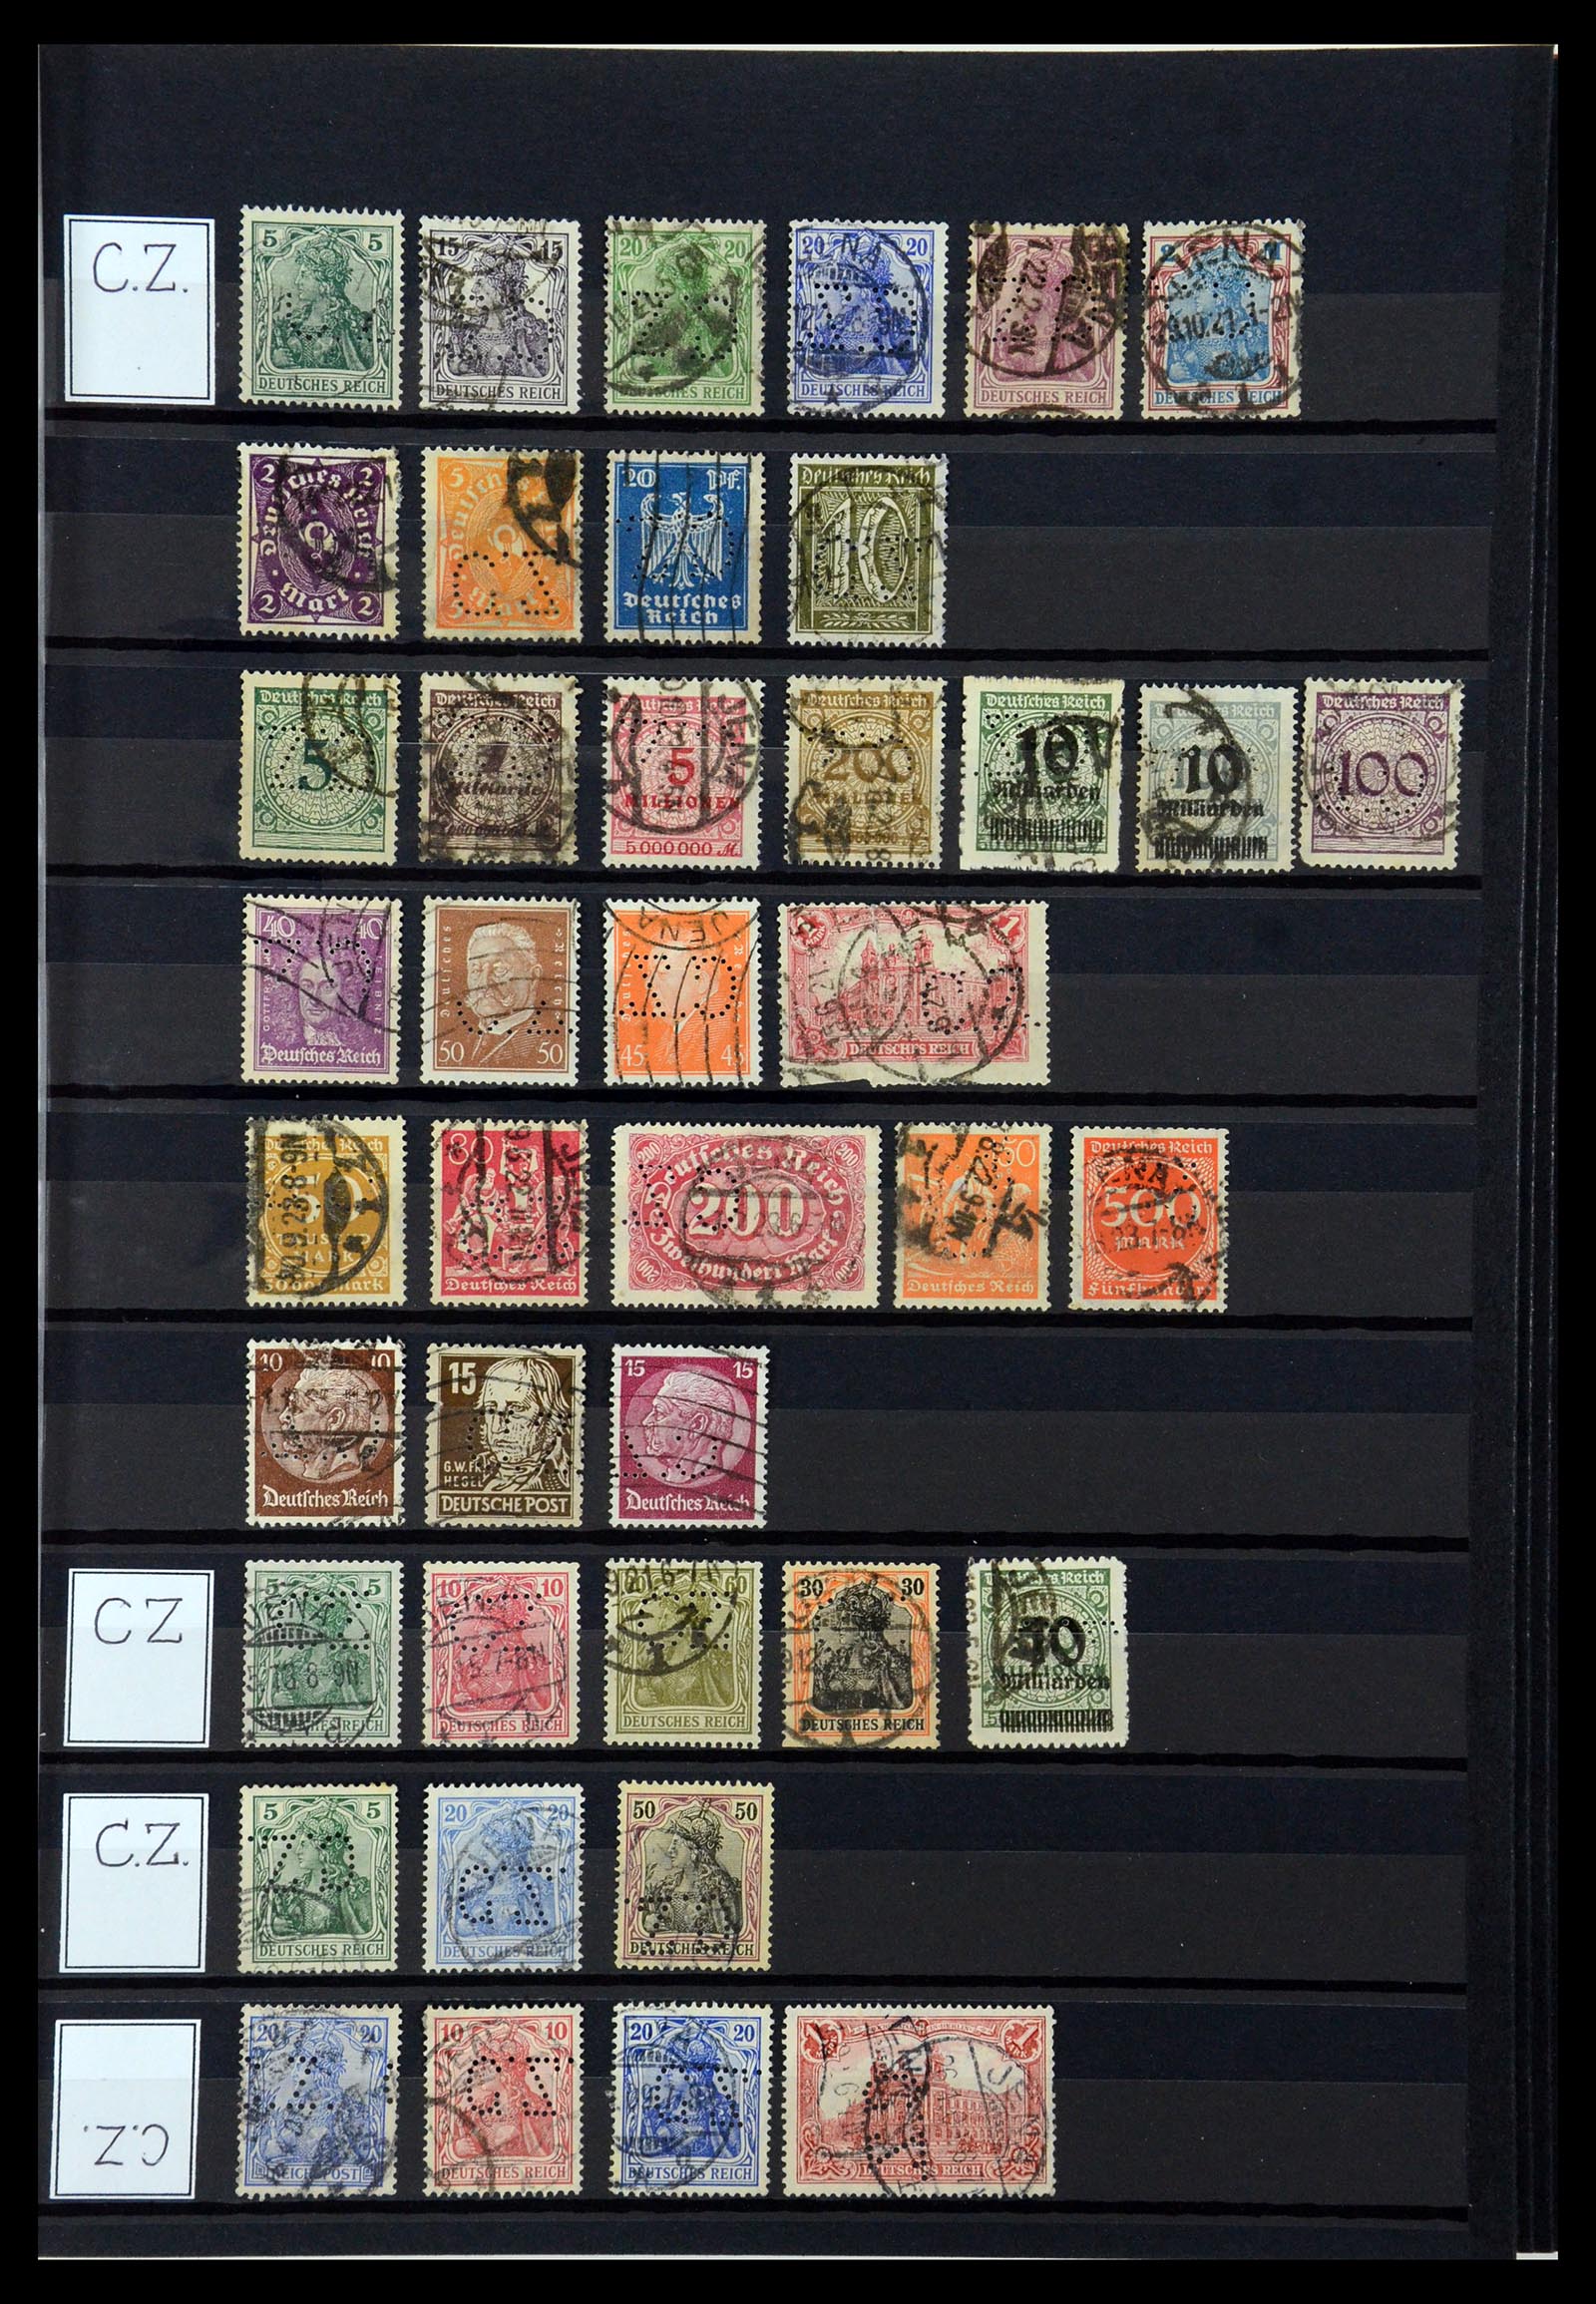 36405 087 - Stamp collection 36405 German Reich perfins 1880-1945.